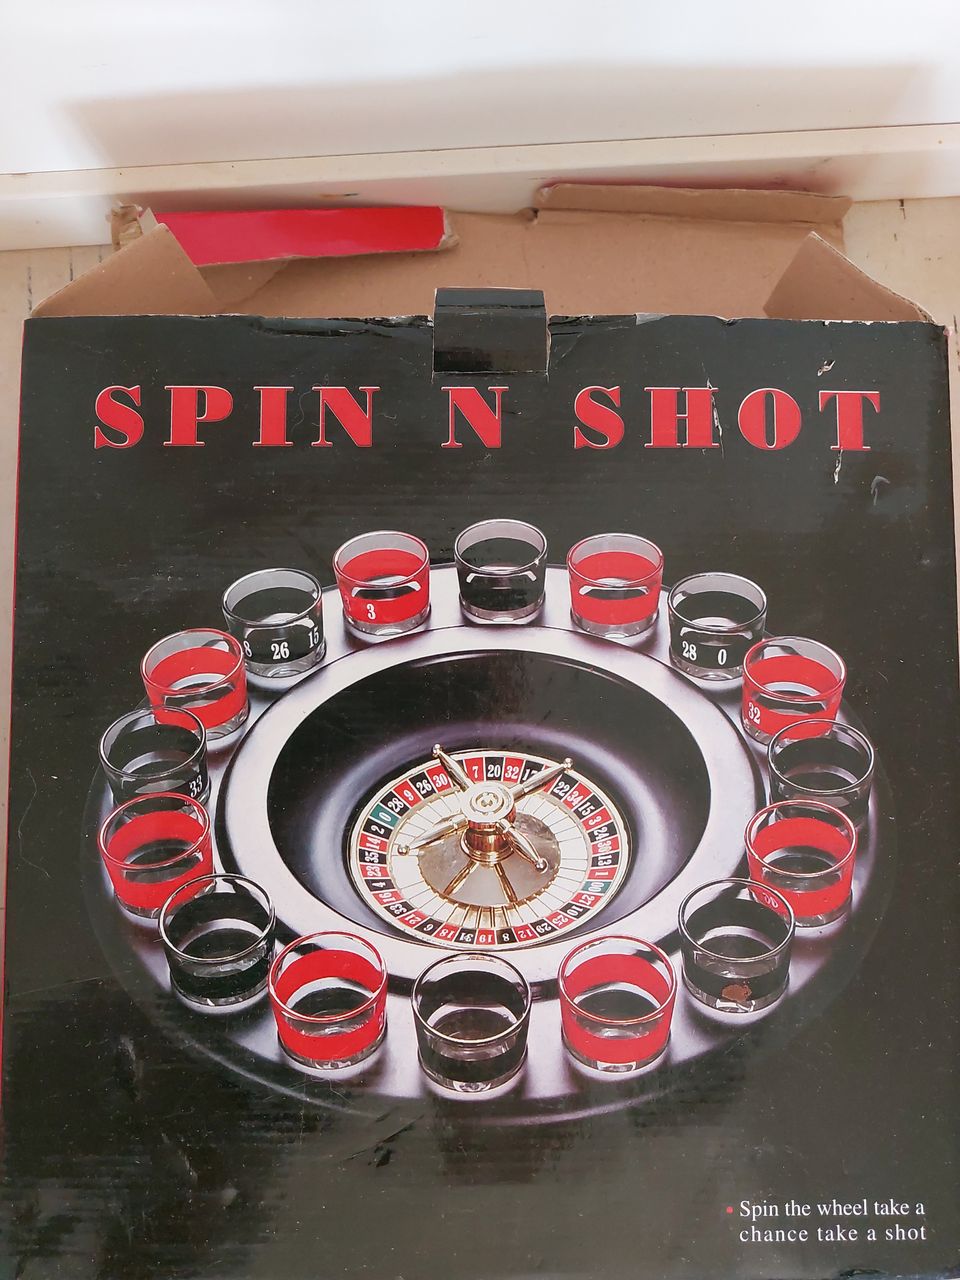 Spin N shot shottiruletti